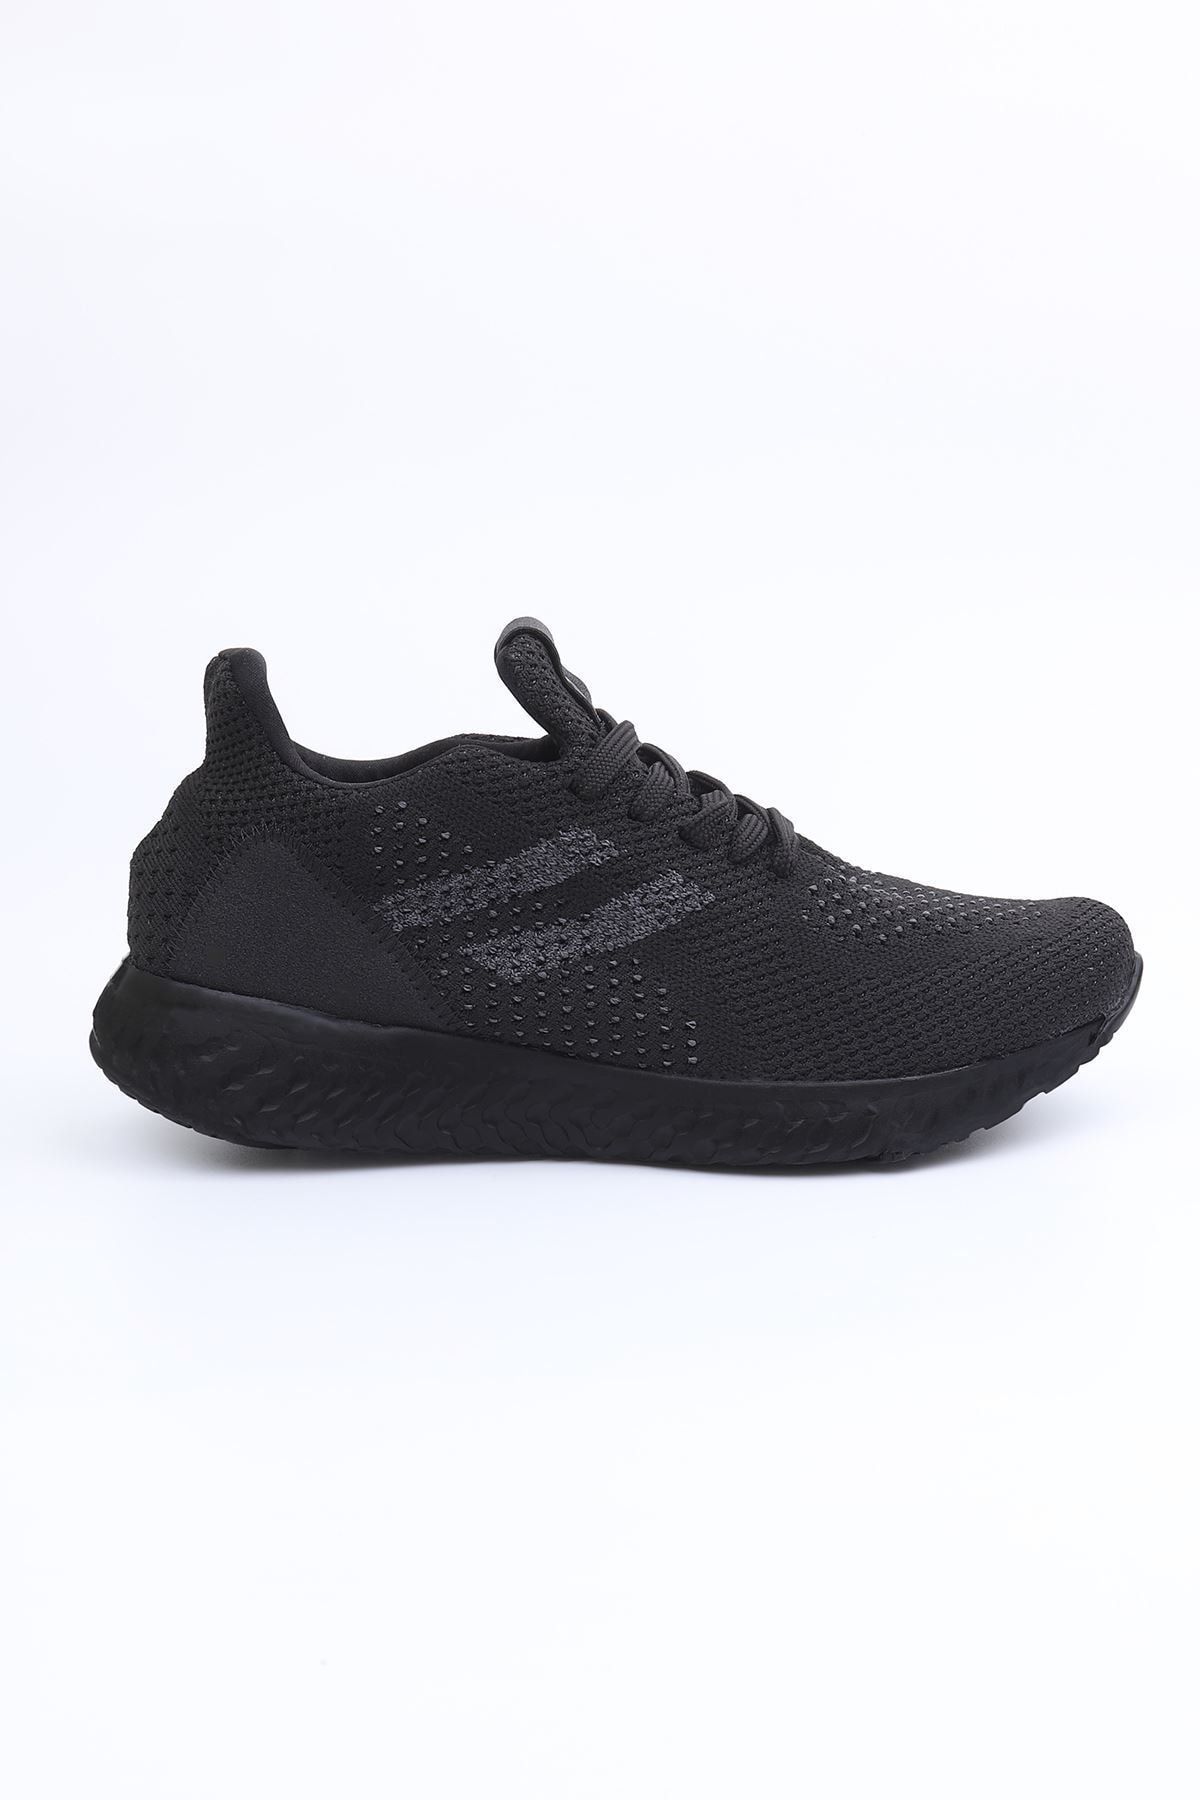 LETOON Unisex Sneaker - 4850 (020608) - 4850